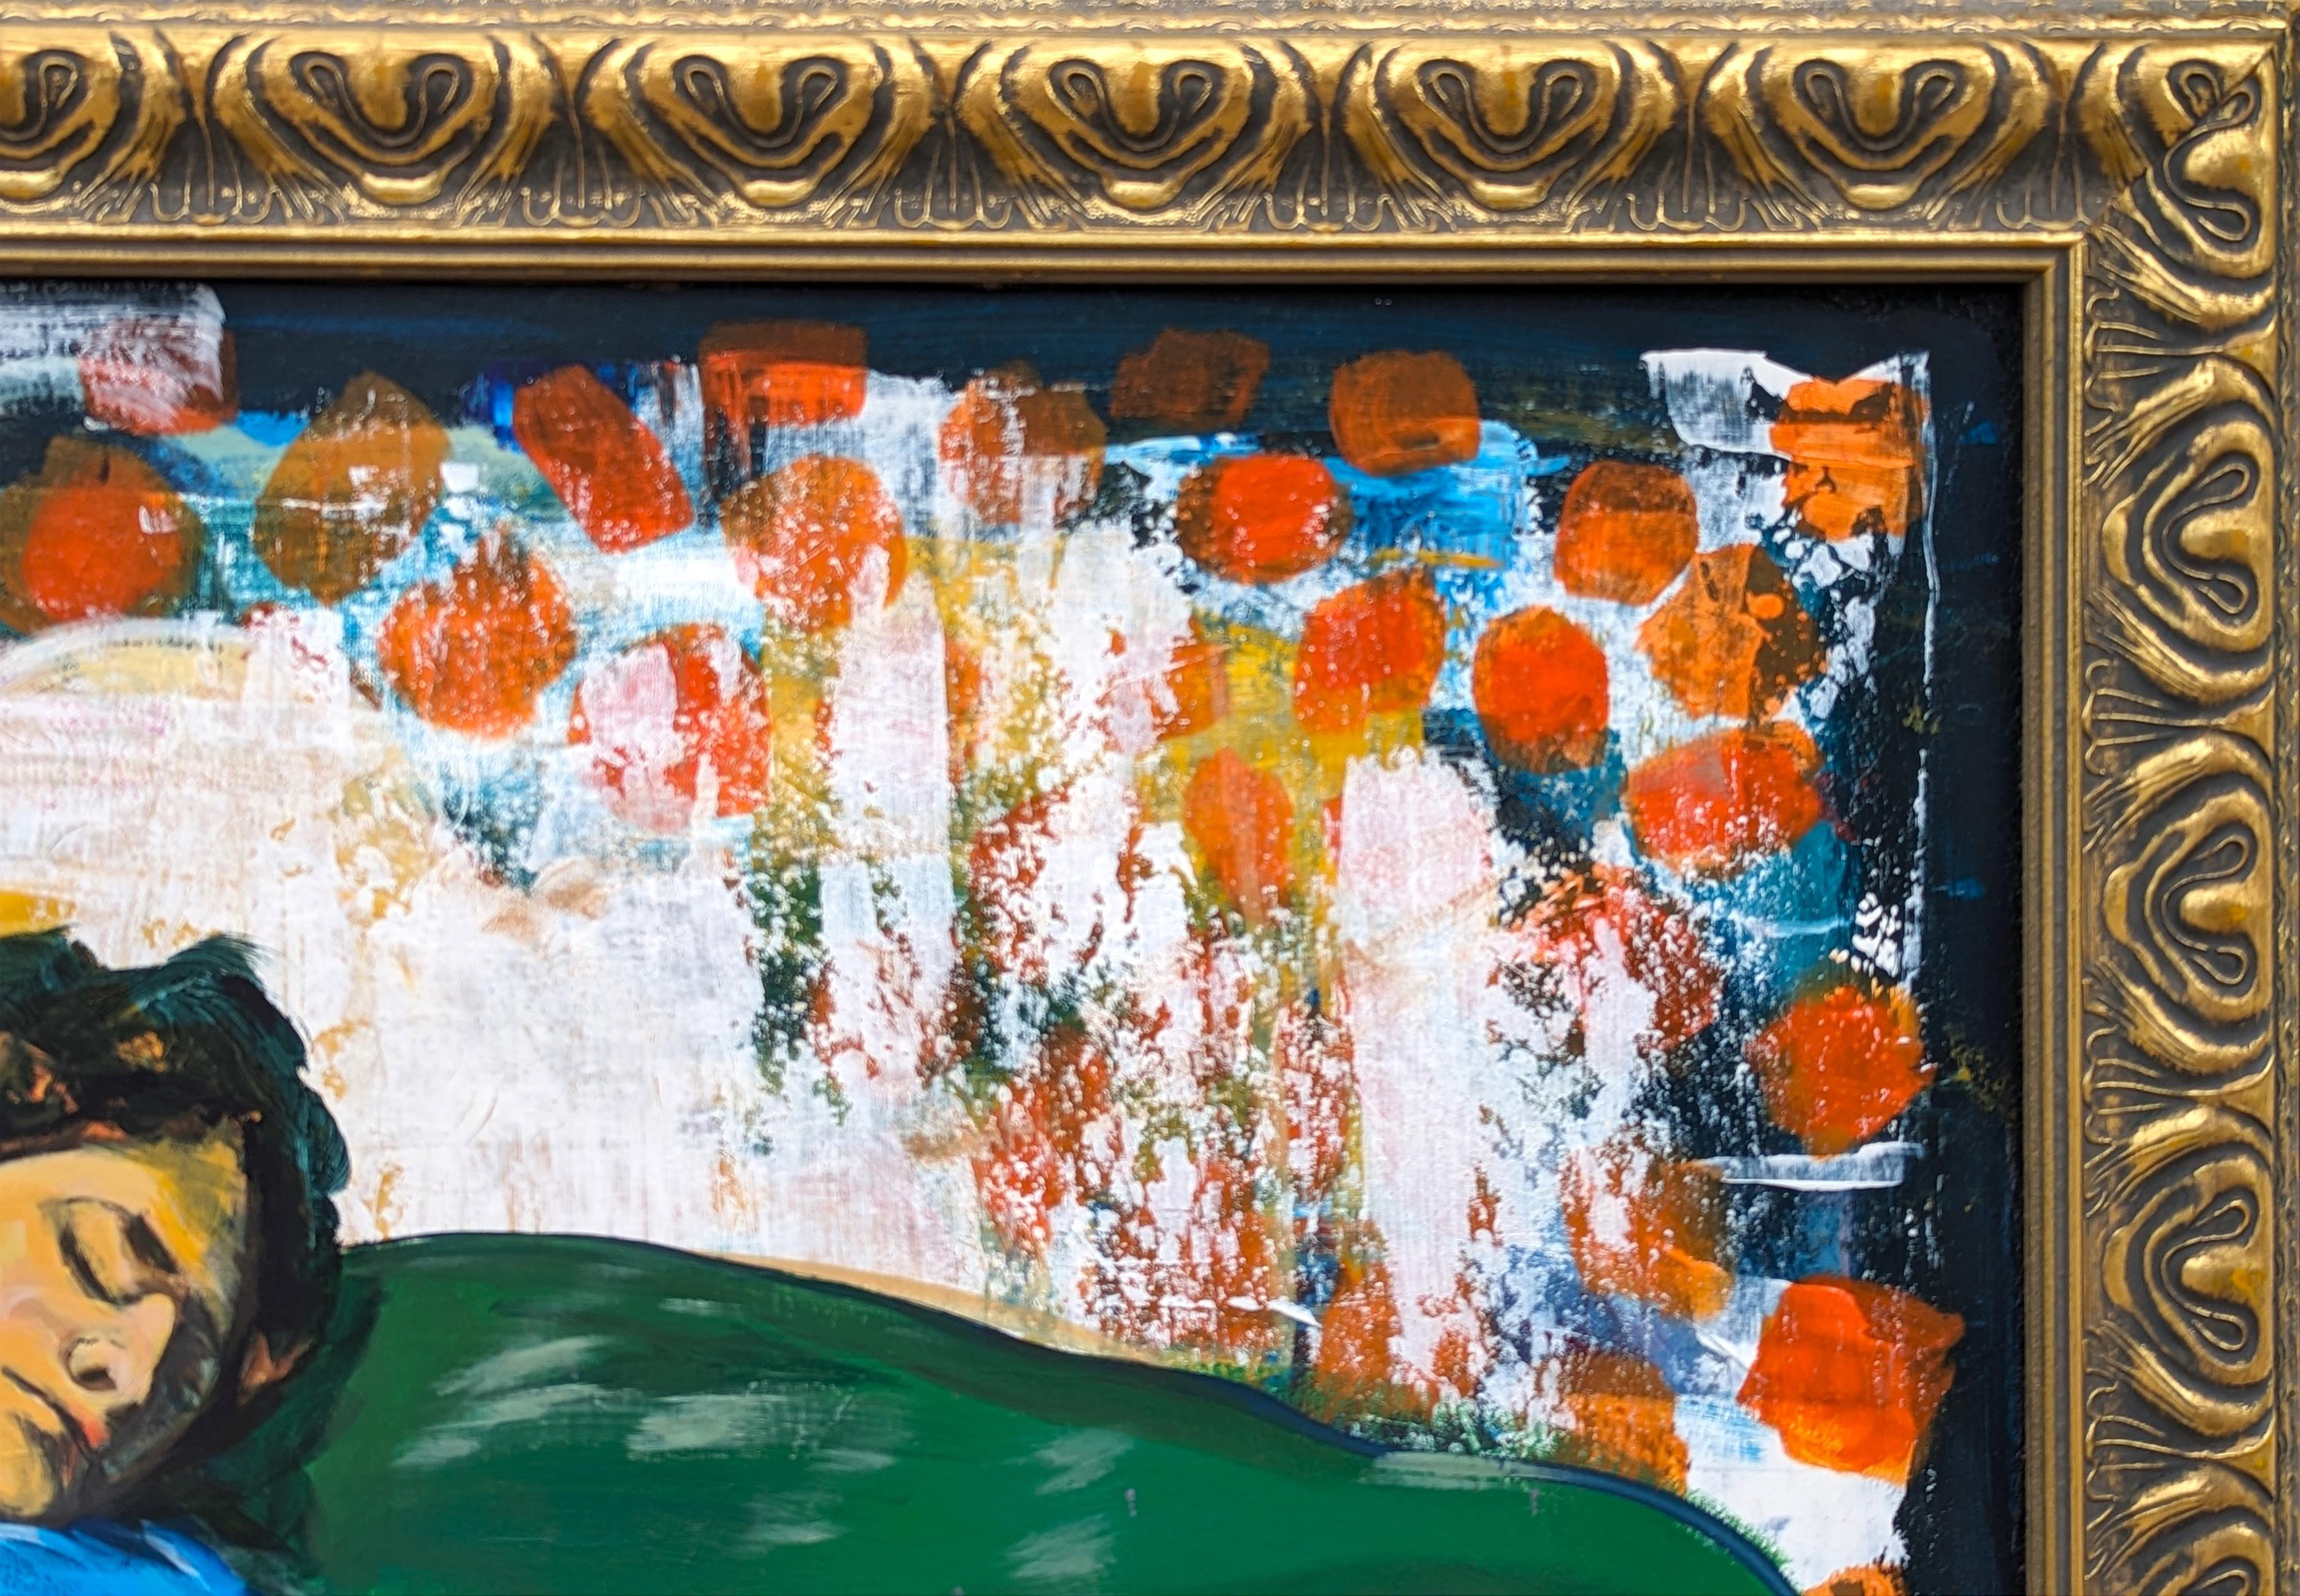 Peinture figurative contemporaine colorée de l'artiste Moisés Villafuerte, basé à Houston. L'œuvre représente une femme vêtue de bleu reposant sur une pile de coussins sur un fond orange et magenta. Il est actuellement accroché dans un cadre doré